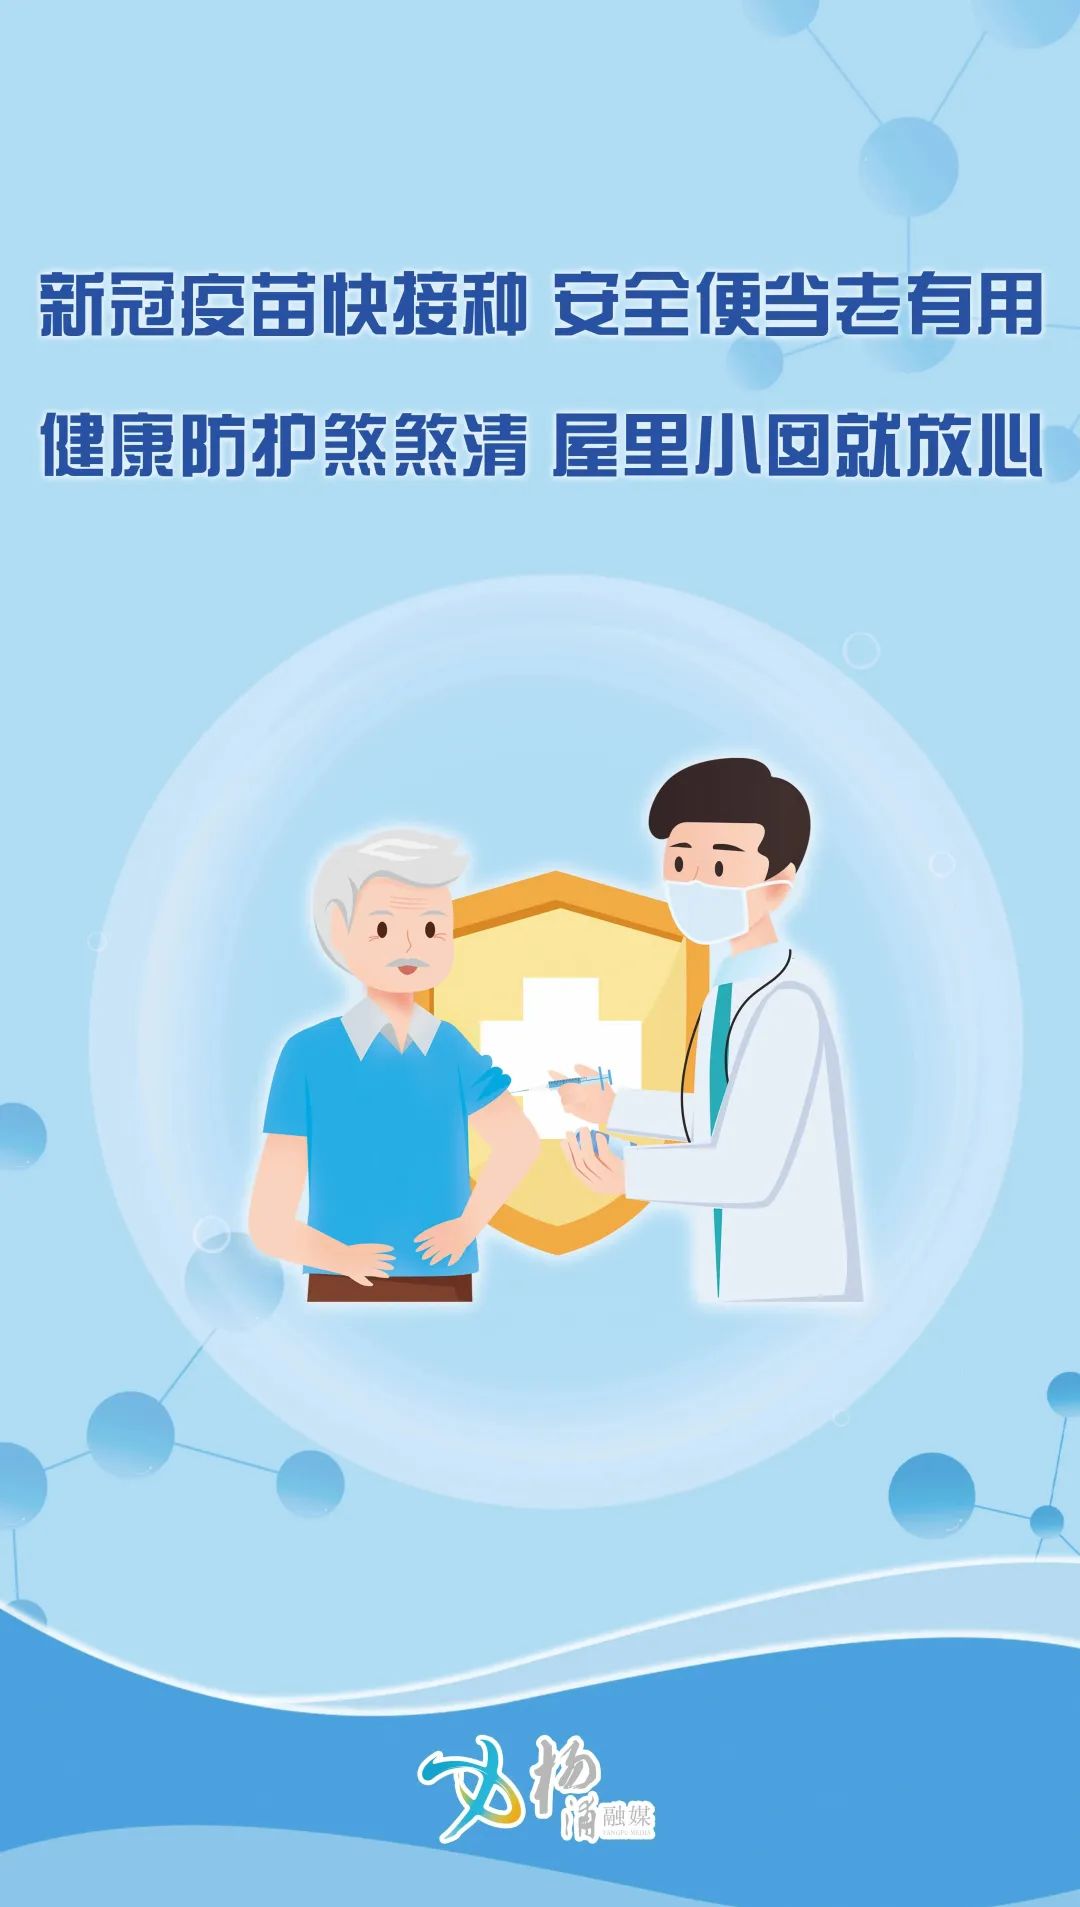 中国医学科学院肿瘤医院黄牛票贩子号贩子电话-的简单介绍